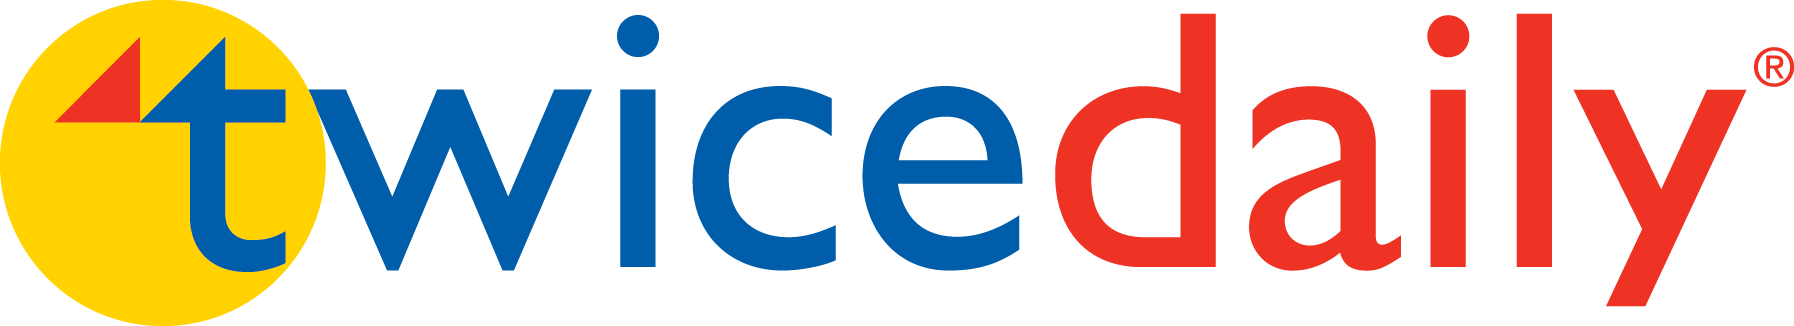 Twice Daily logo